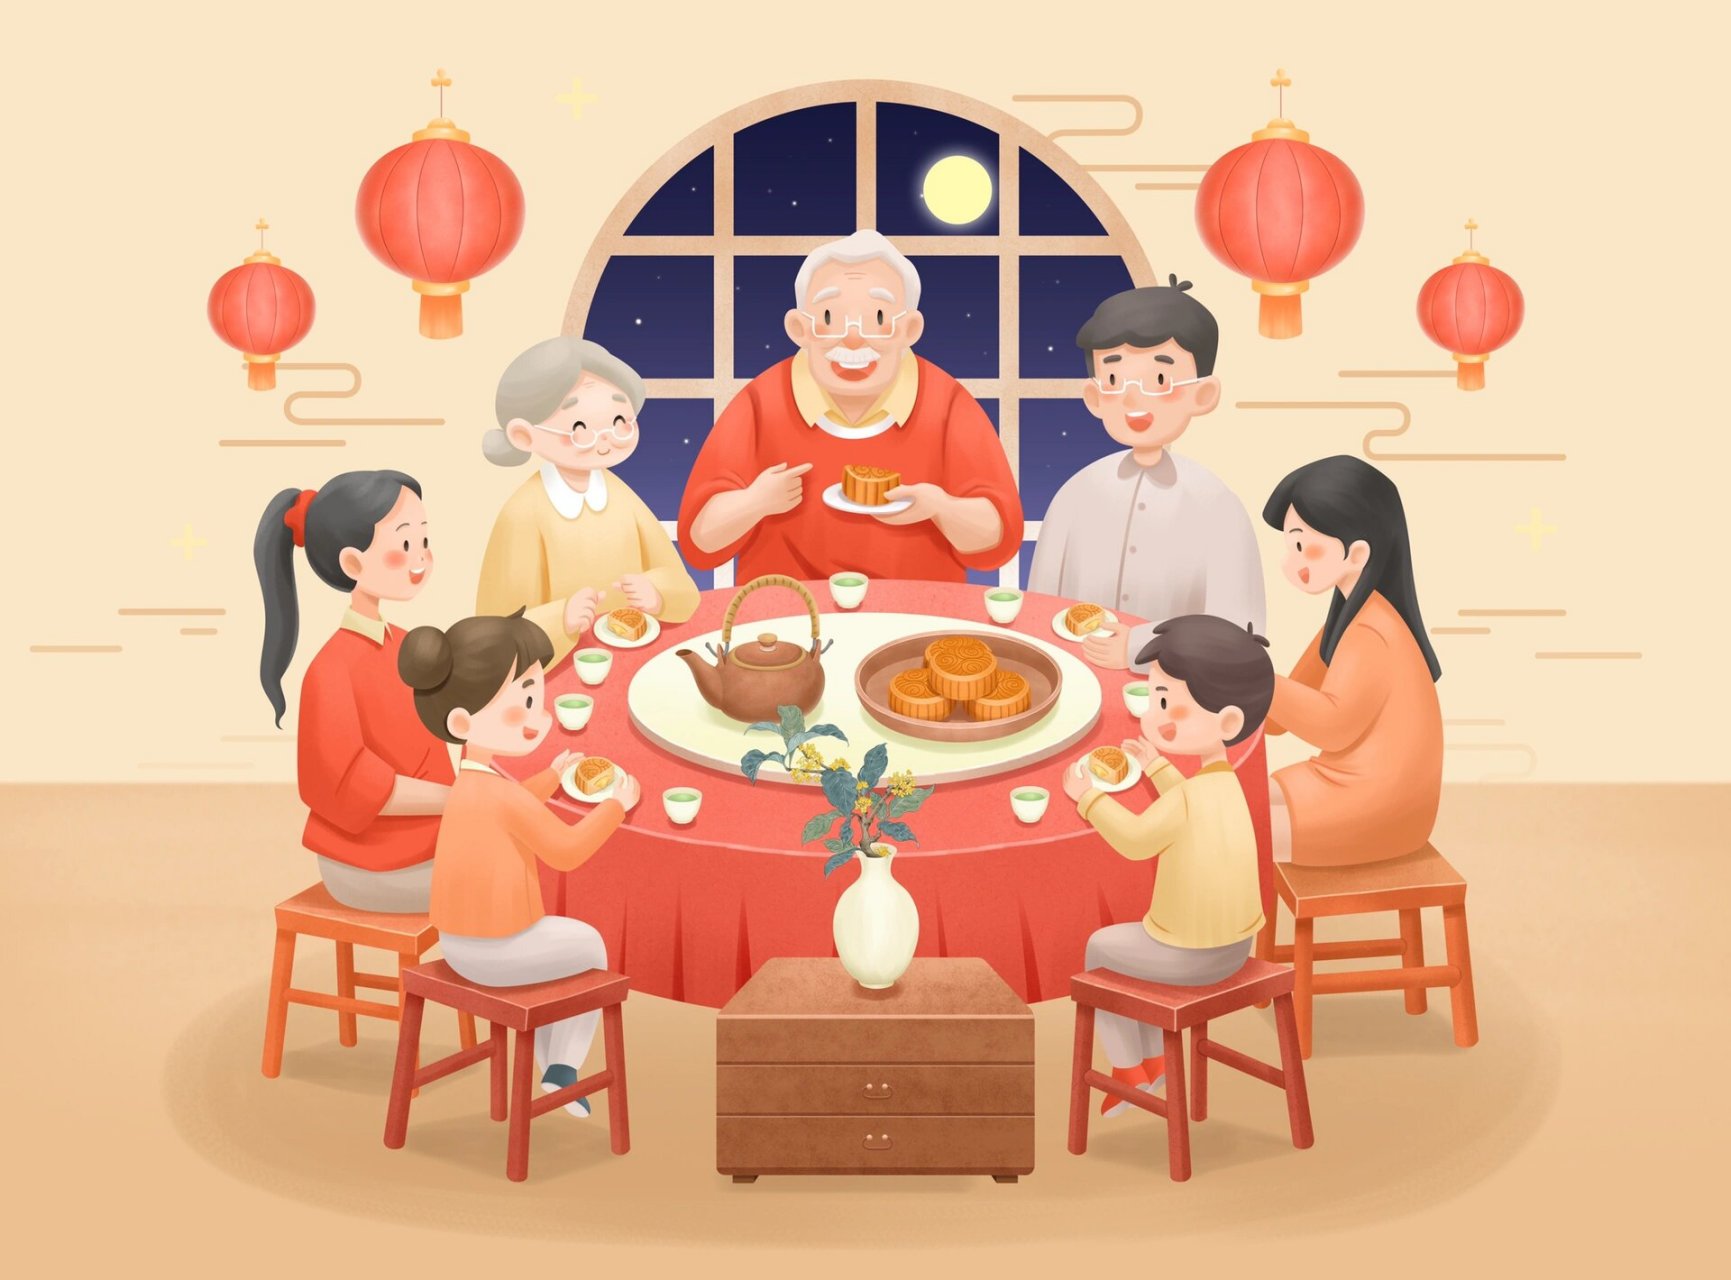 中秋节家人团圆聚餐 8月底画的中秋节插画,丢电脑里忘放出来了,提前祝